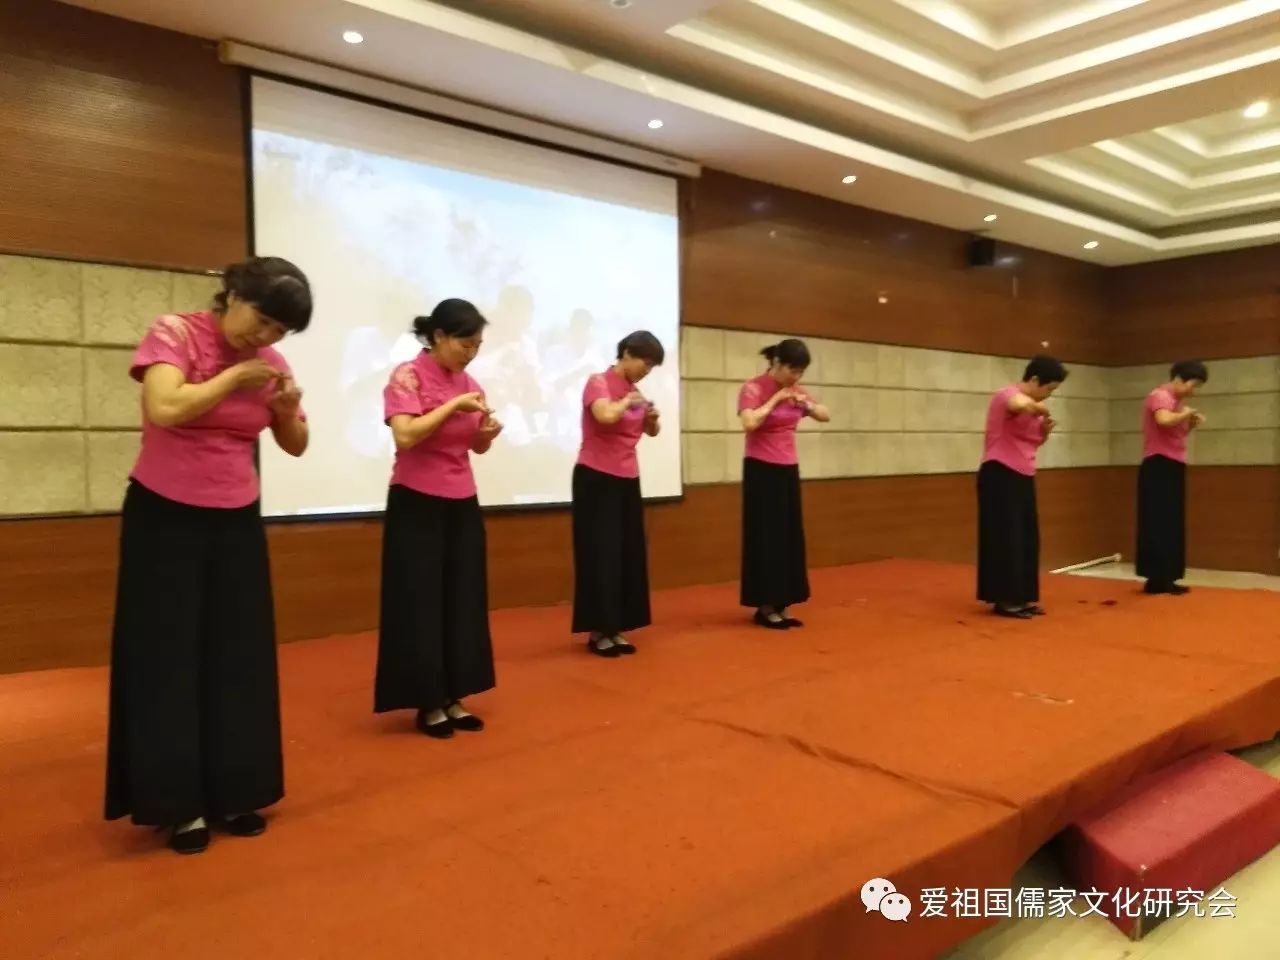 传统文化志工团队的手语舞《天之大》,志工们用舞蹈的动作,把心中对